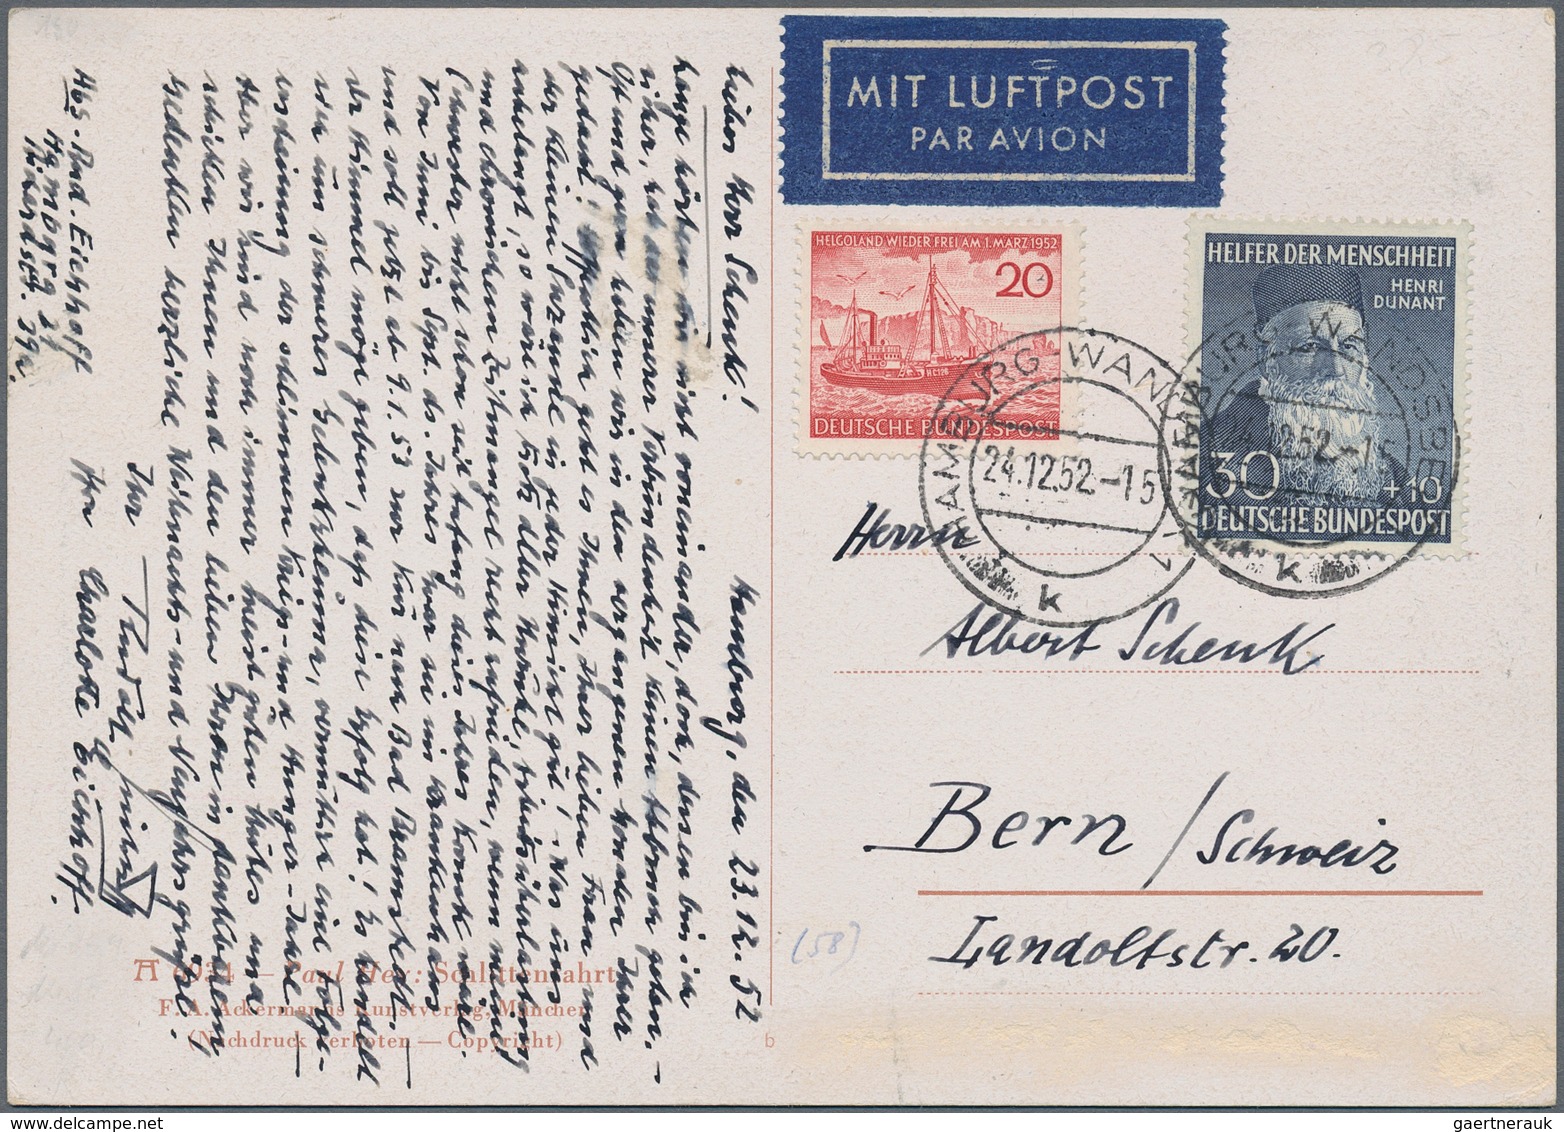 Bundesrepublik Deutschland: 1949/2000 (ca.), vielseitige Partie von ca. 300 Briefen/Karten/Ganzsache